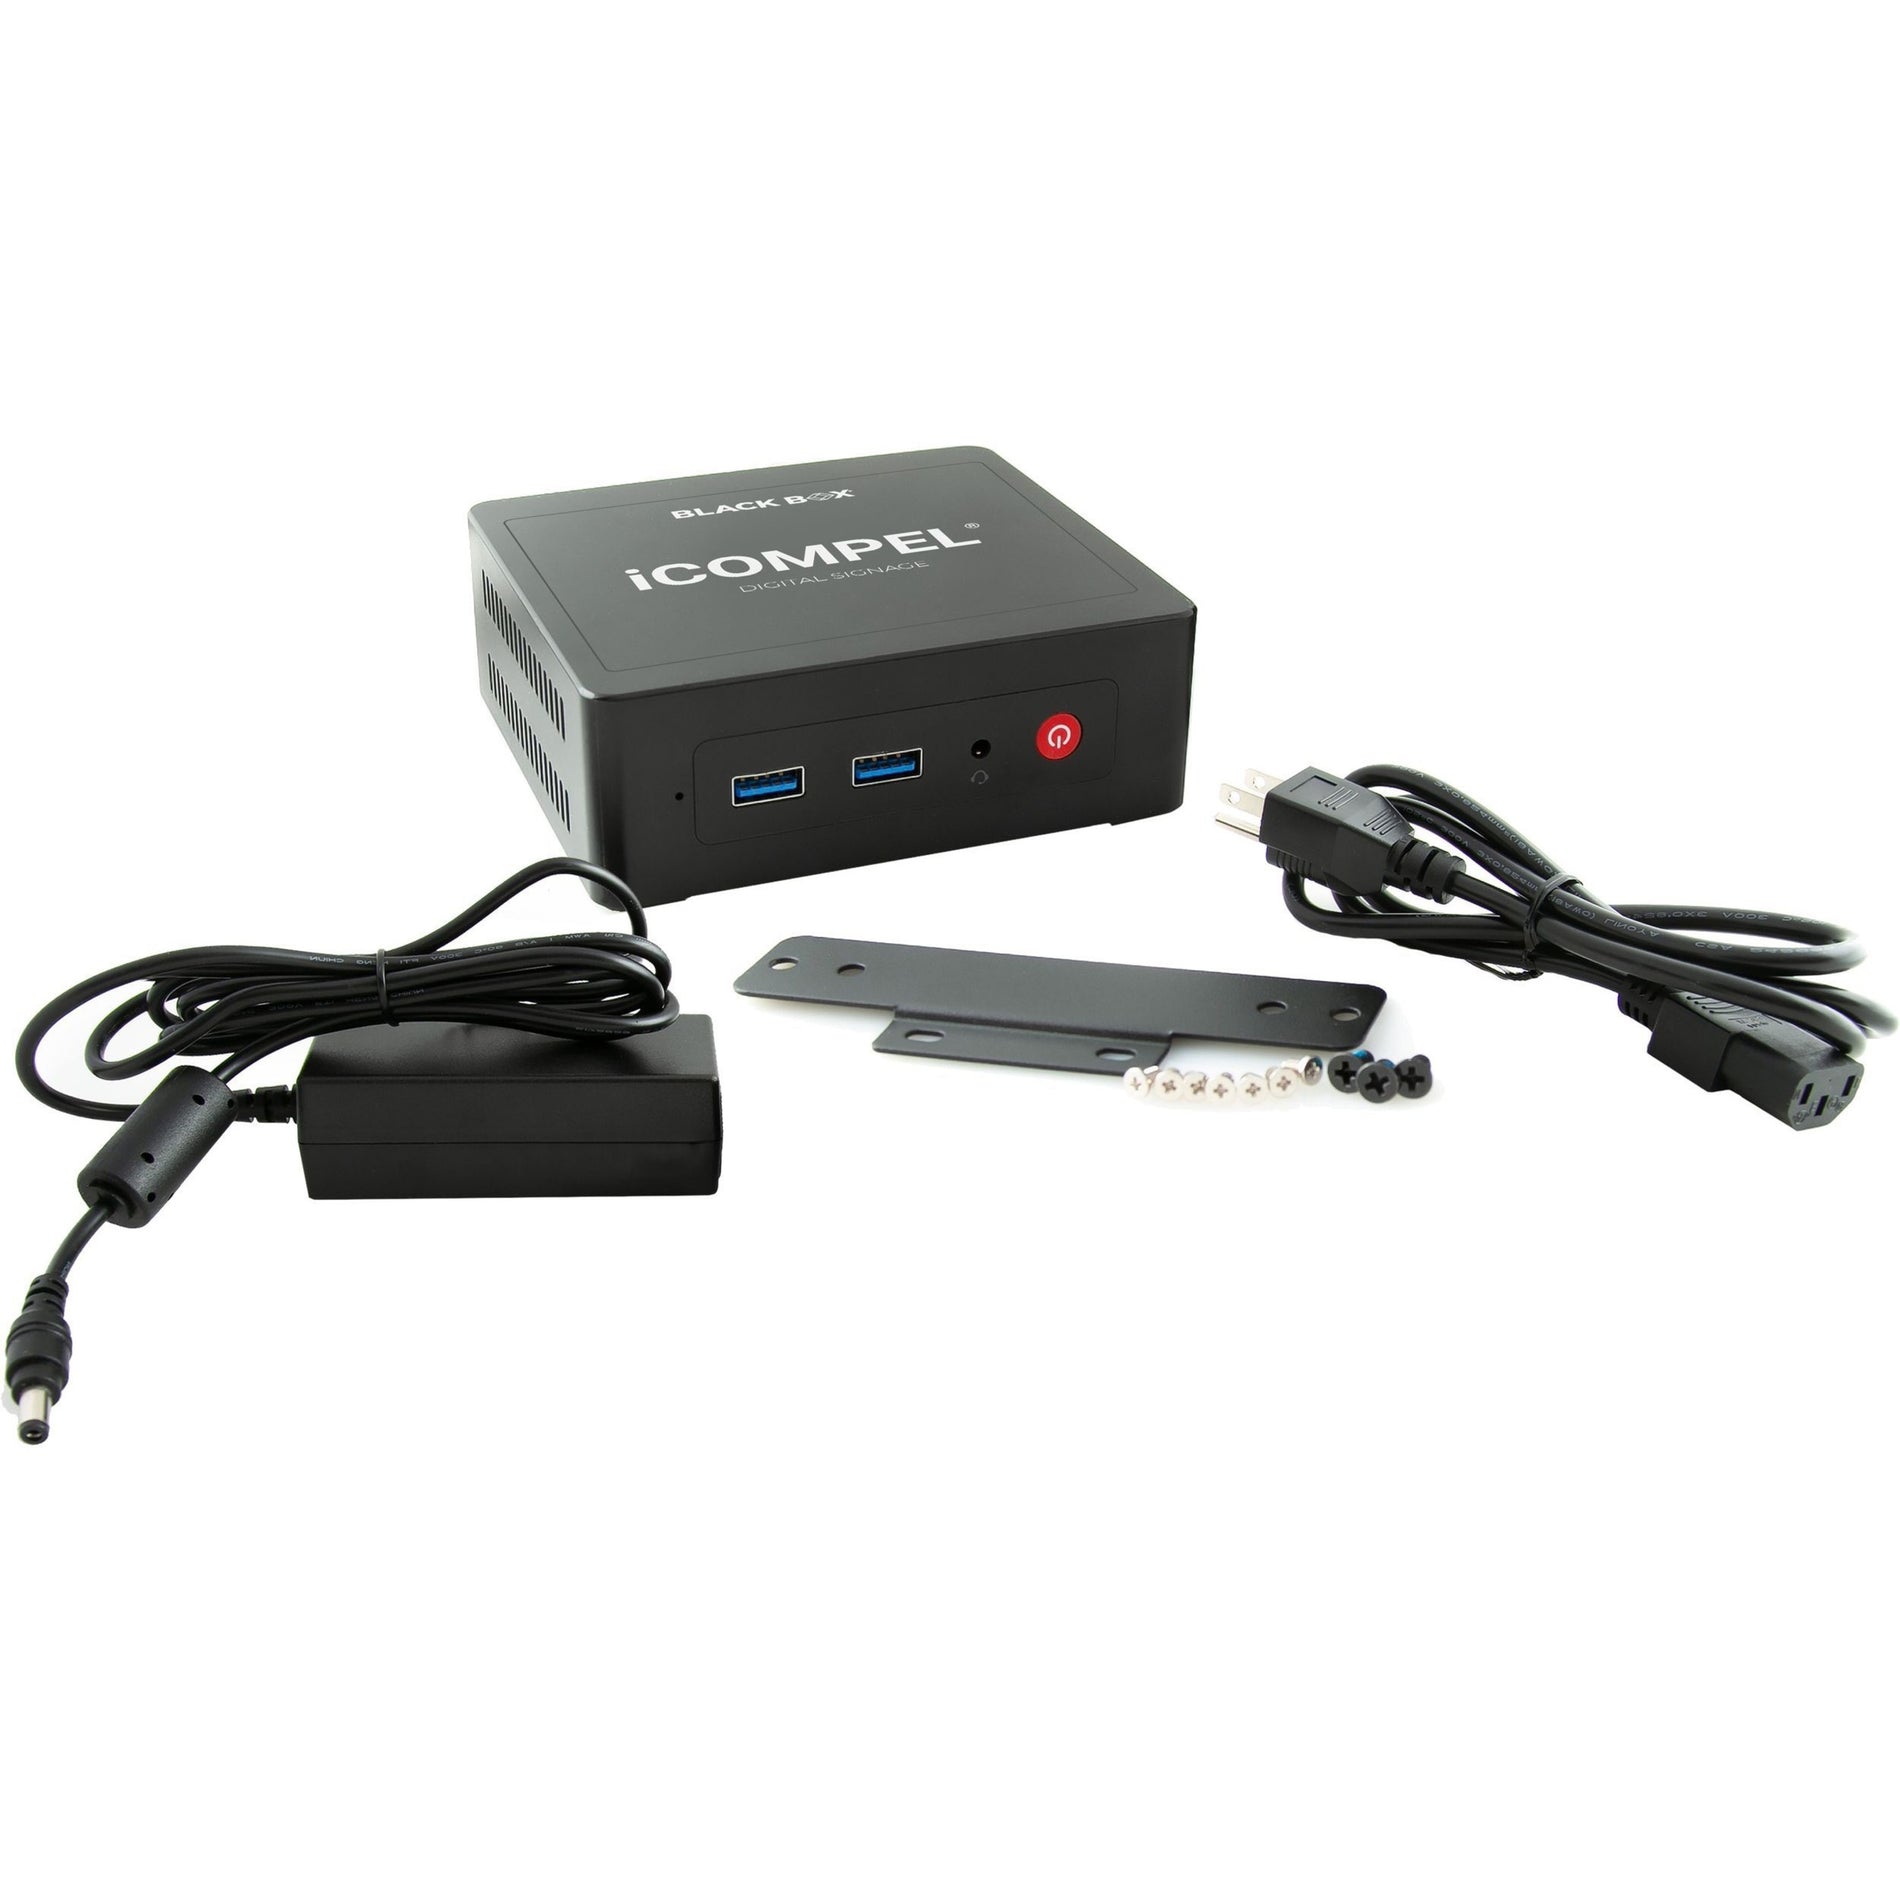 Black Box ICVS-VL-SU-N-R3 iCompel Digital Signage Full HD Media Player, 1080p, 128GB SSD, 1 Year Warranty